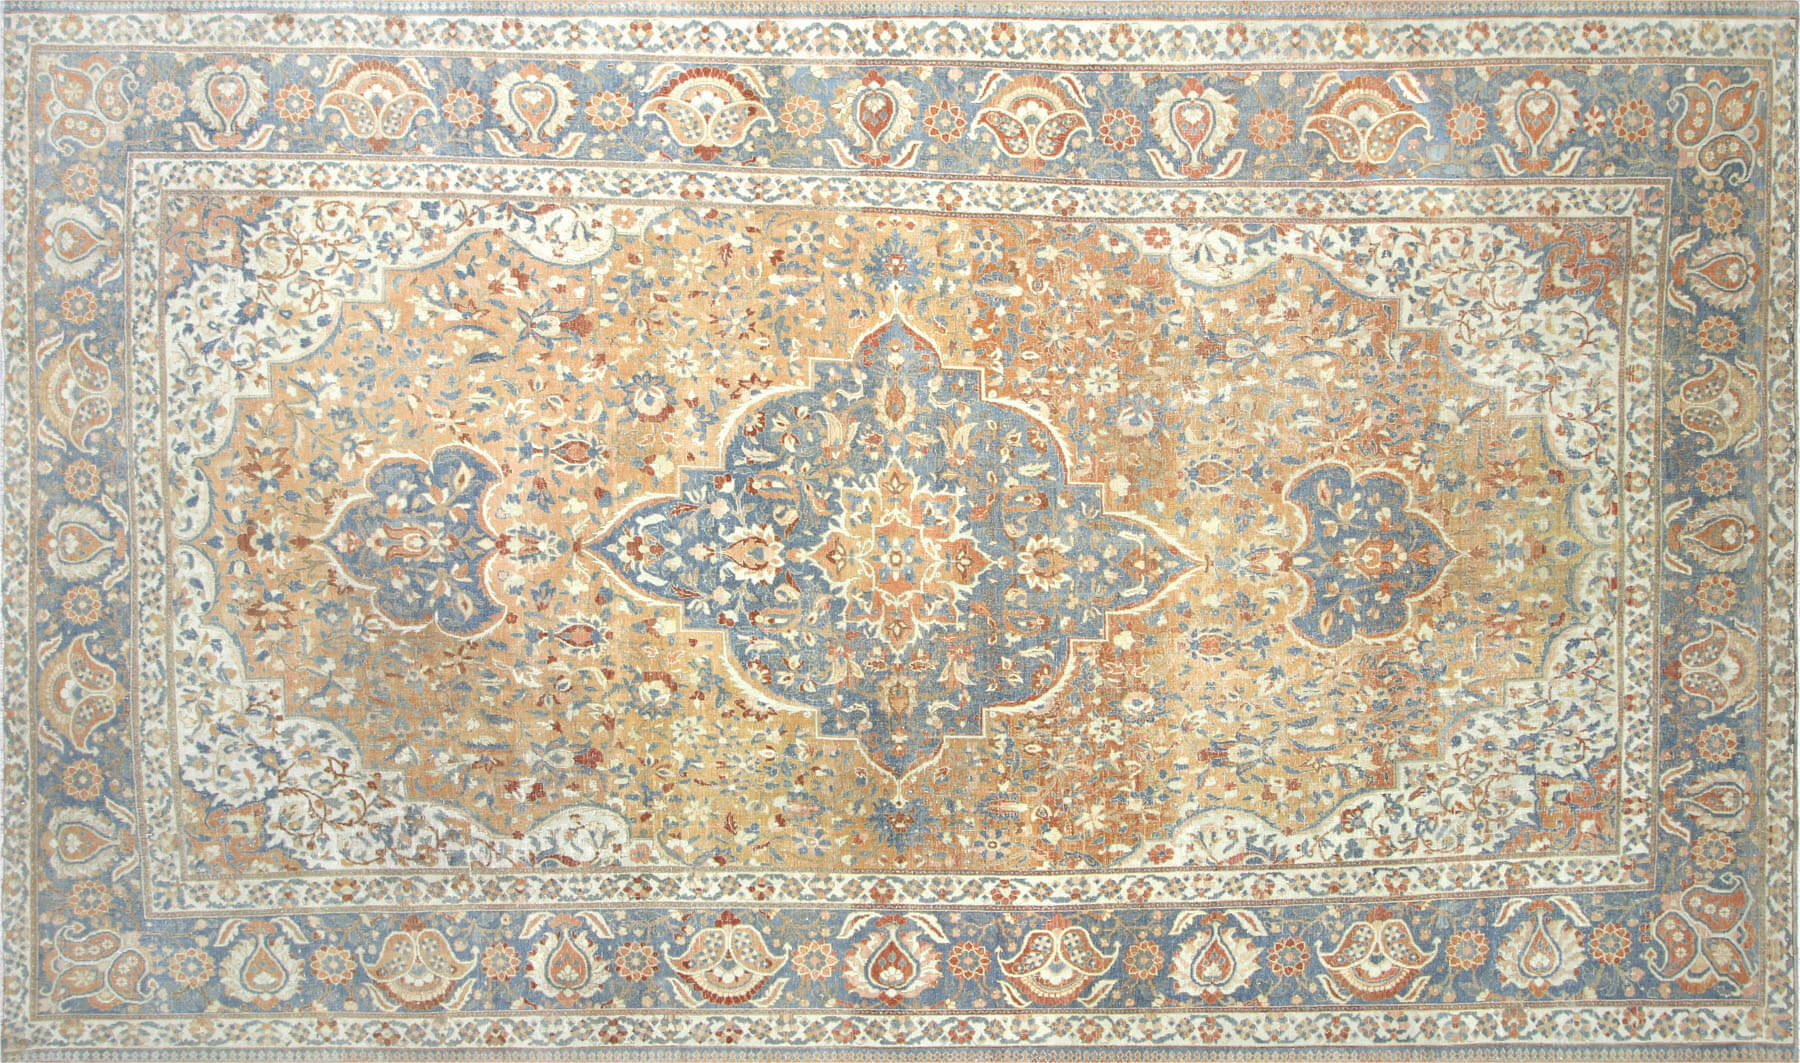 1930s Persian Baktiari Rug,10'2" x 17'3"~P77630416